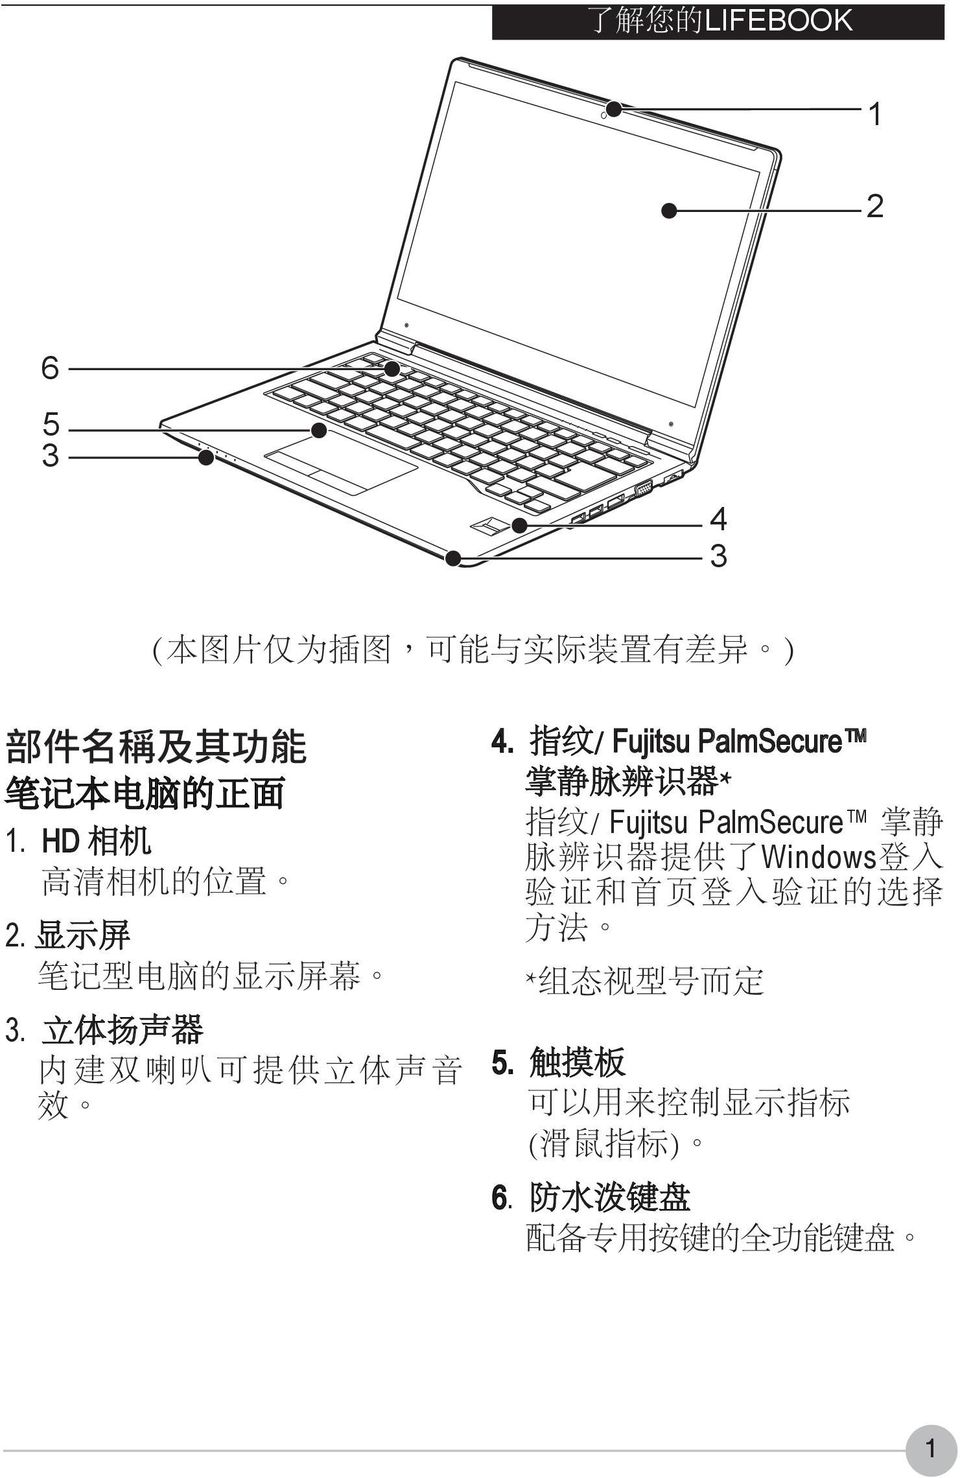 指 纹 / Fujitsu PalmSecure 掌 静 脉 辨 识 器 * 指 纹 / Fujitsu PalmSecure 掌 静 脉 辨 识 器 提 供 了 Windows 登 入 验 证 和 首 页